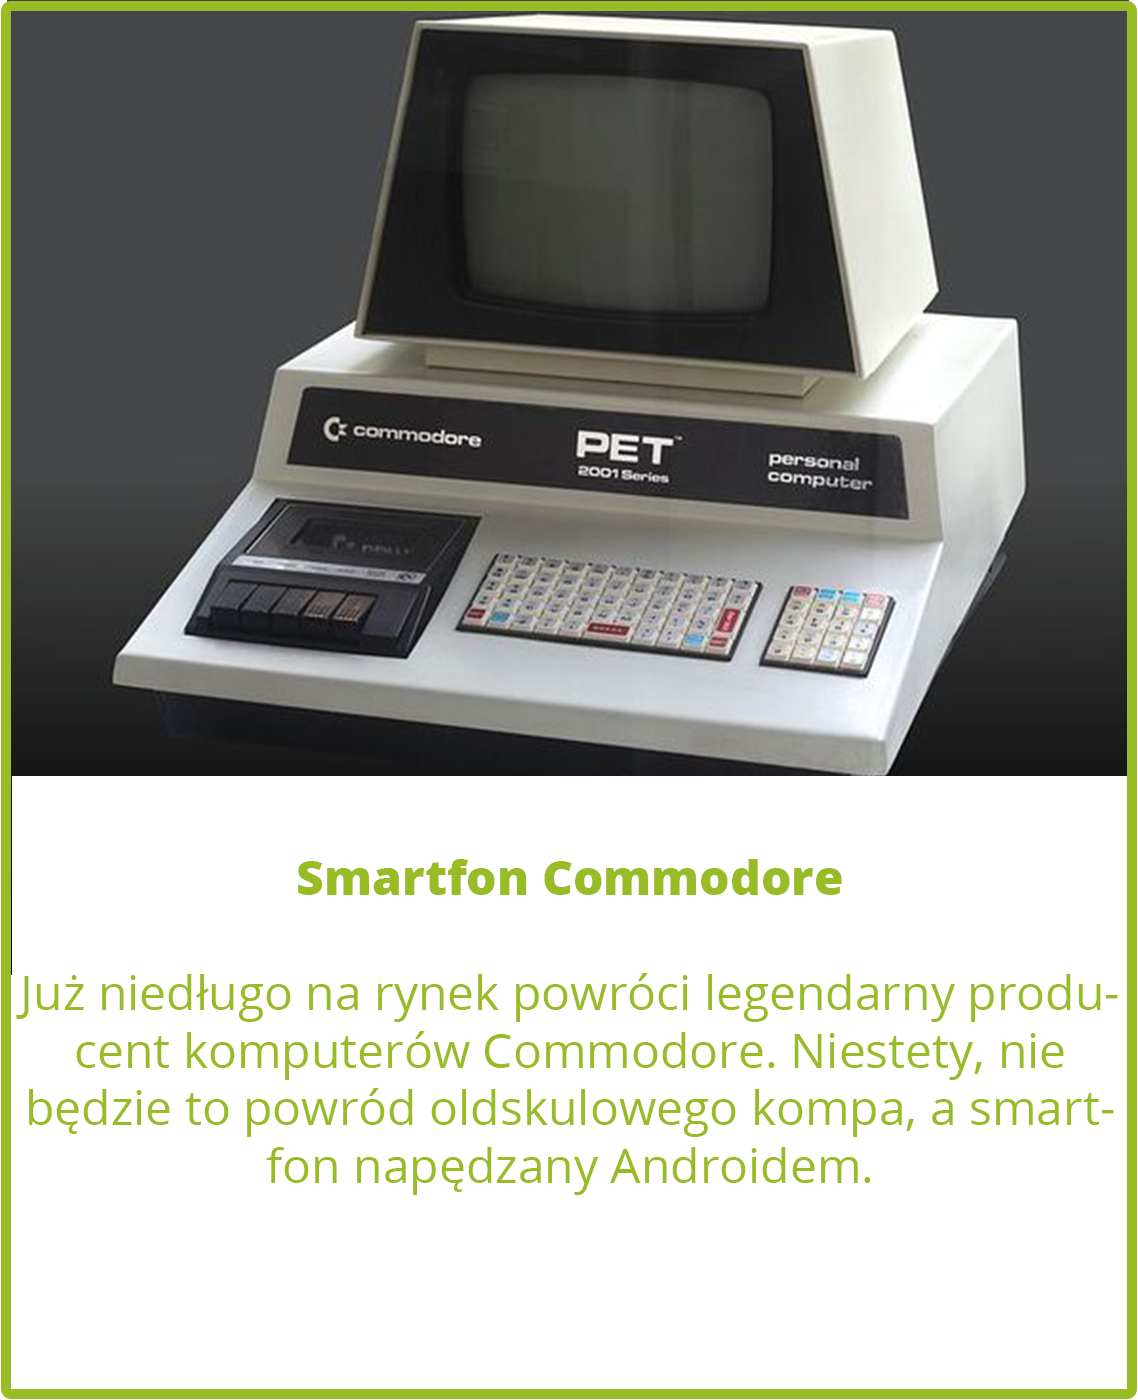 Smartfon Commodore